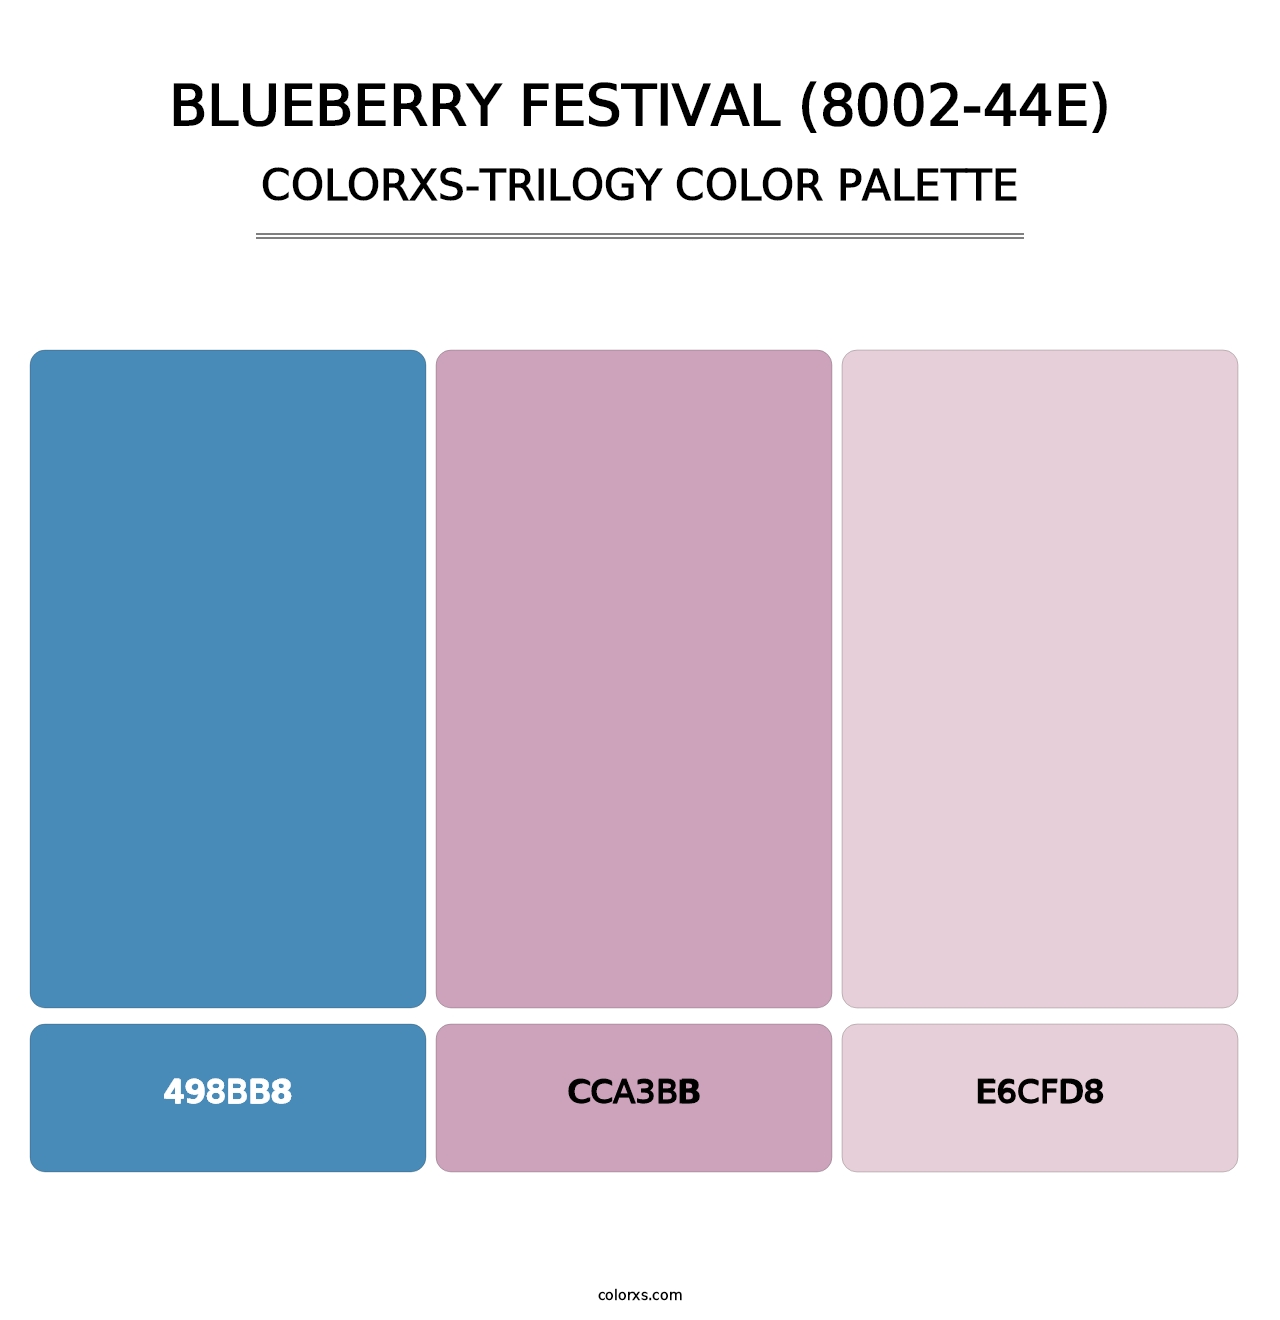 Blueberry Festival (8002-44E) - Colorxs Trilogy Palette